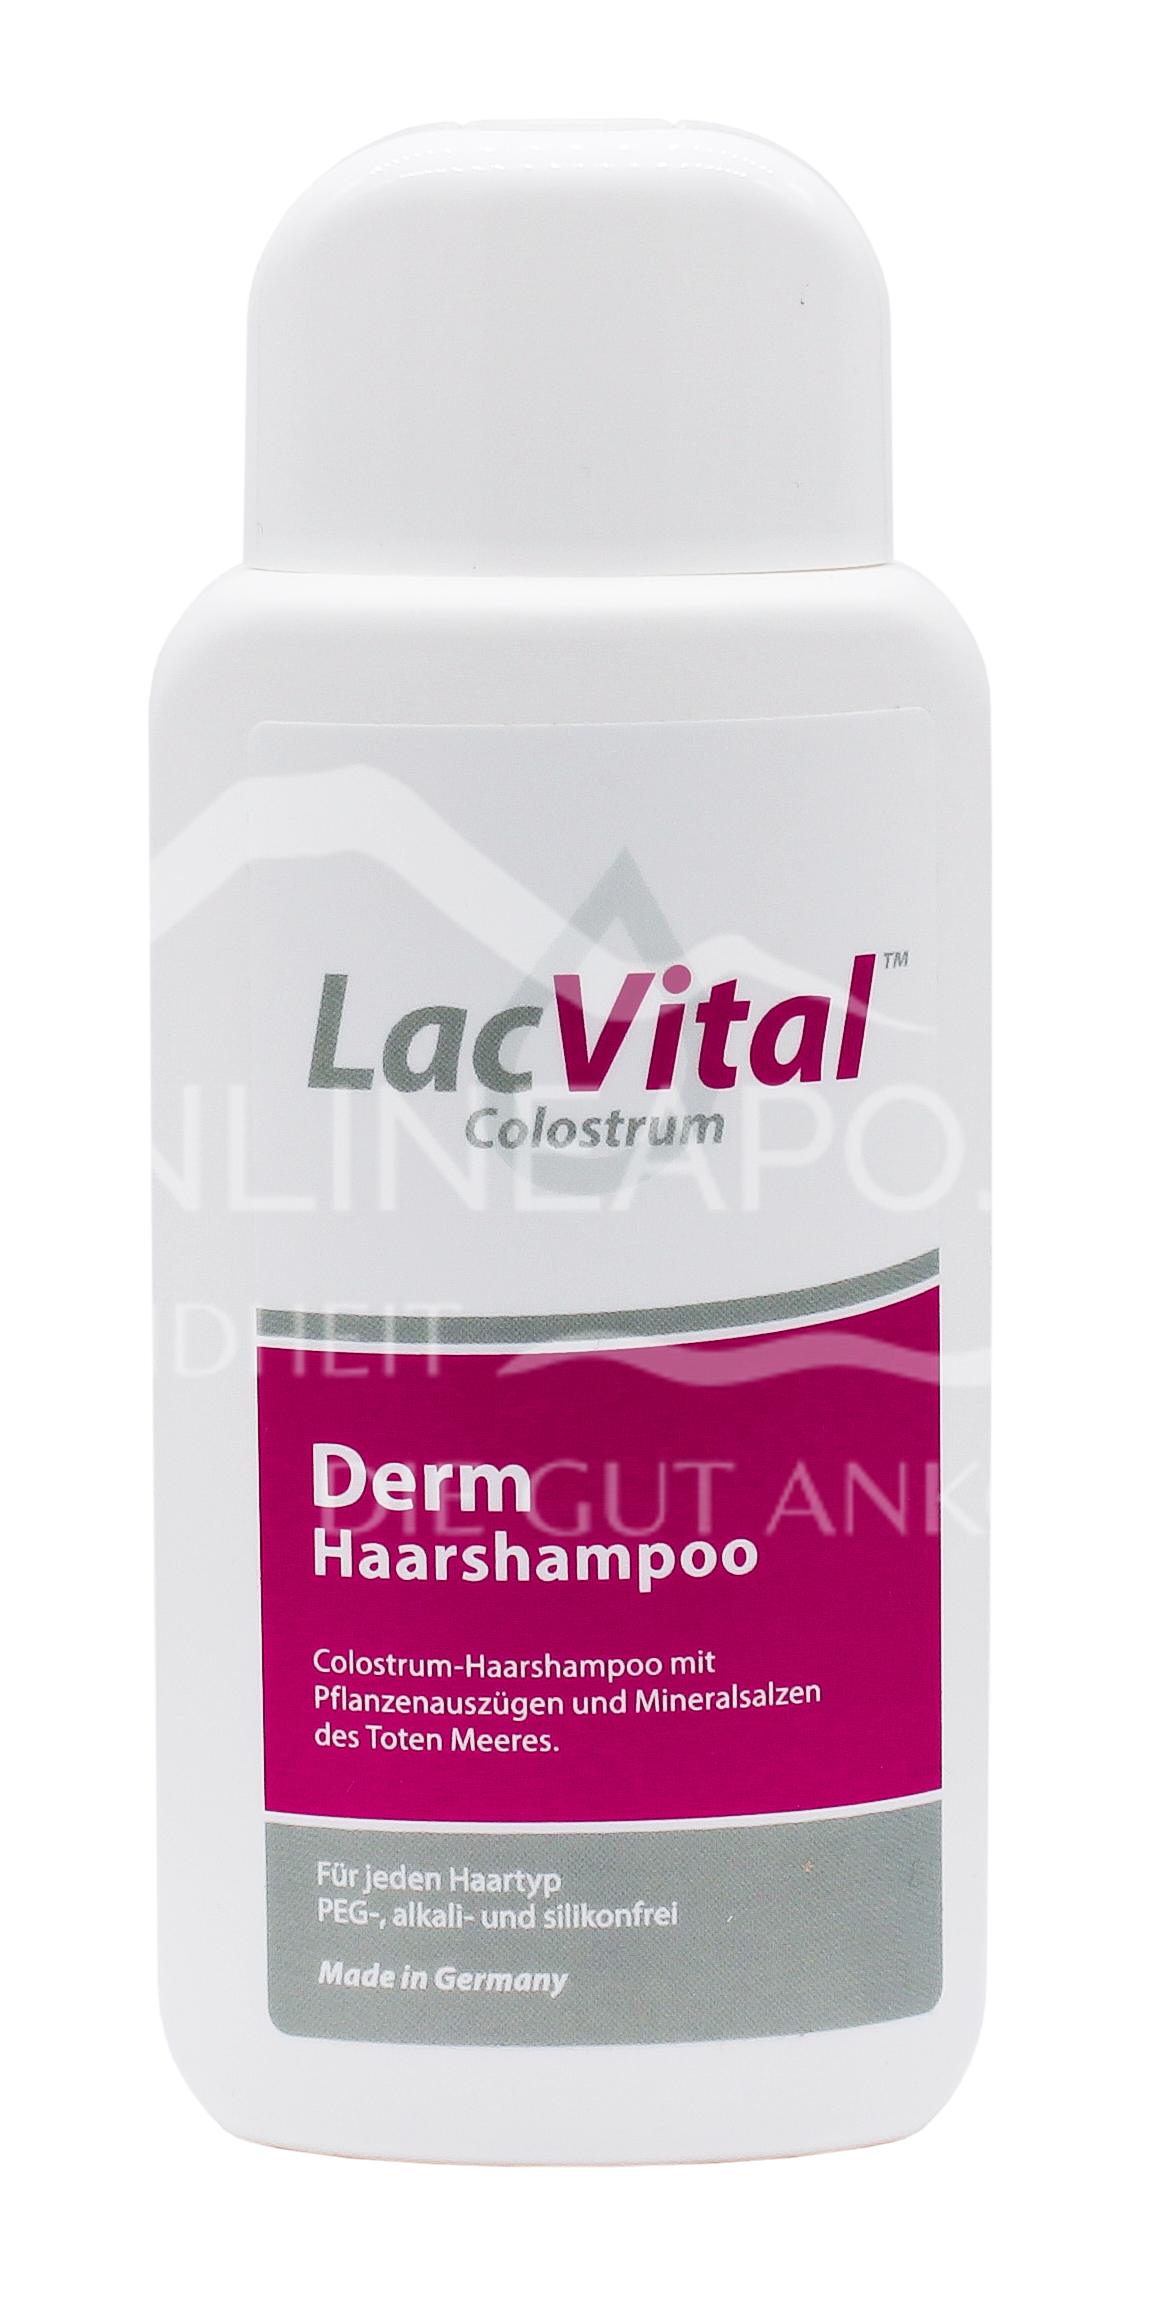 LacVital™ Colostrum Derm Haarshampoo